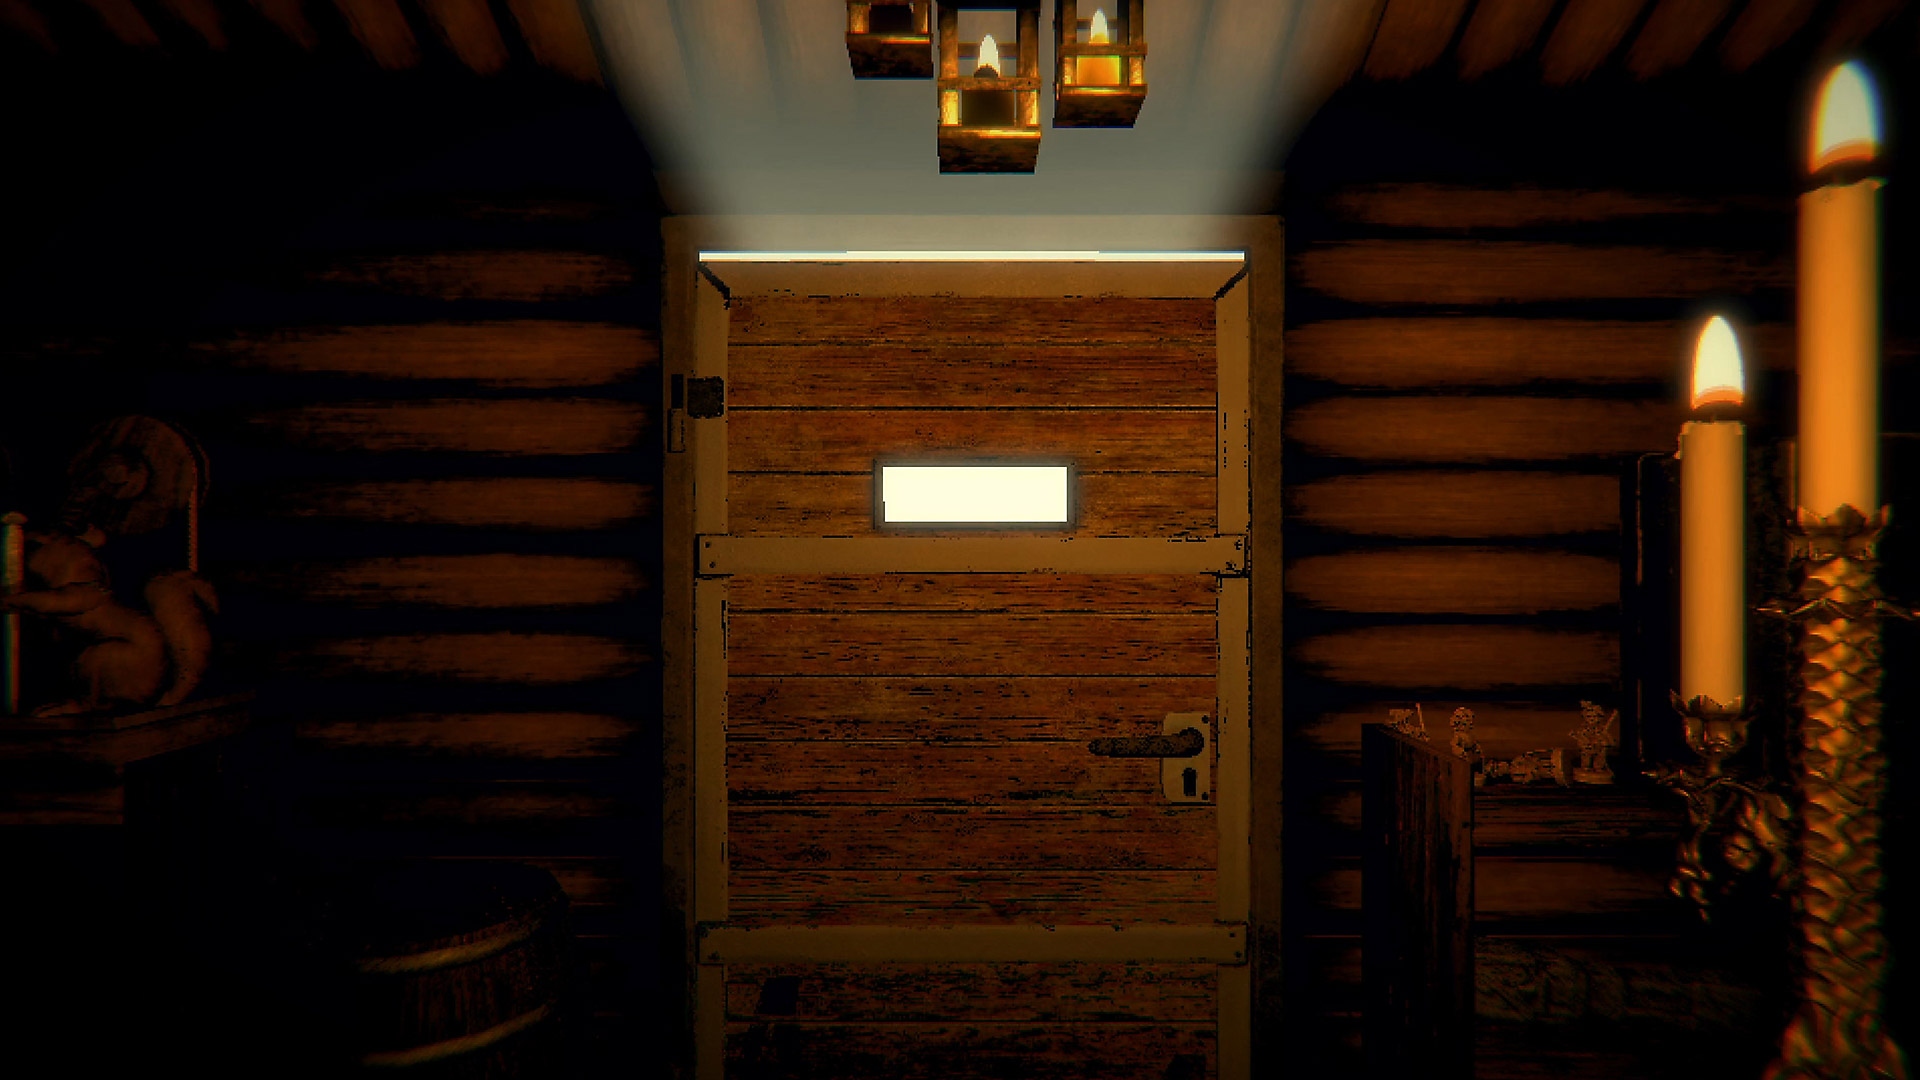 Capture d'écran de gameplay d'Inscryption montrant une porte en bois fermée dans un couloir éclairé à la bougie.